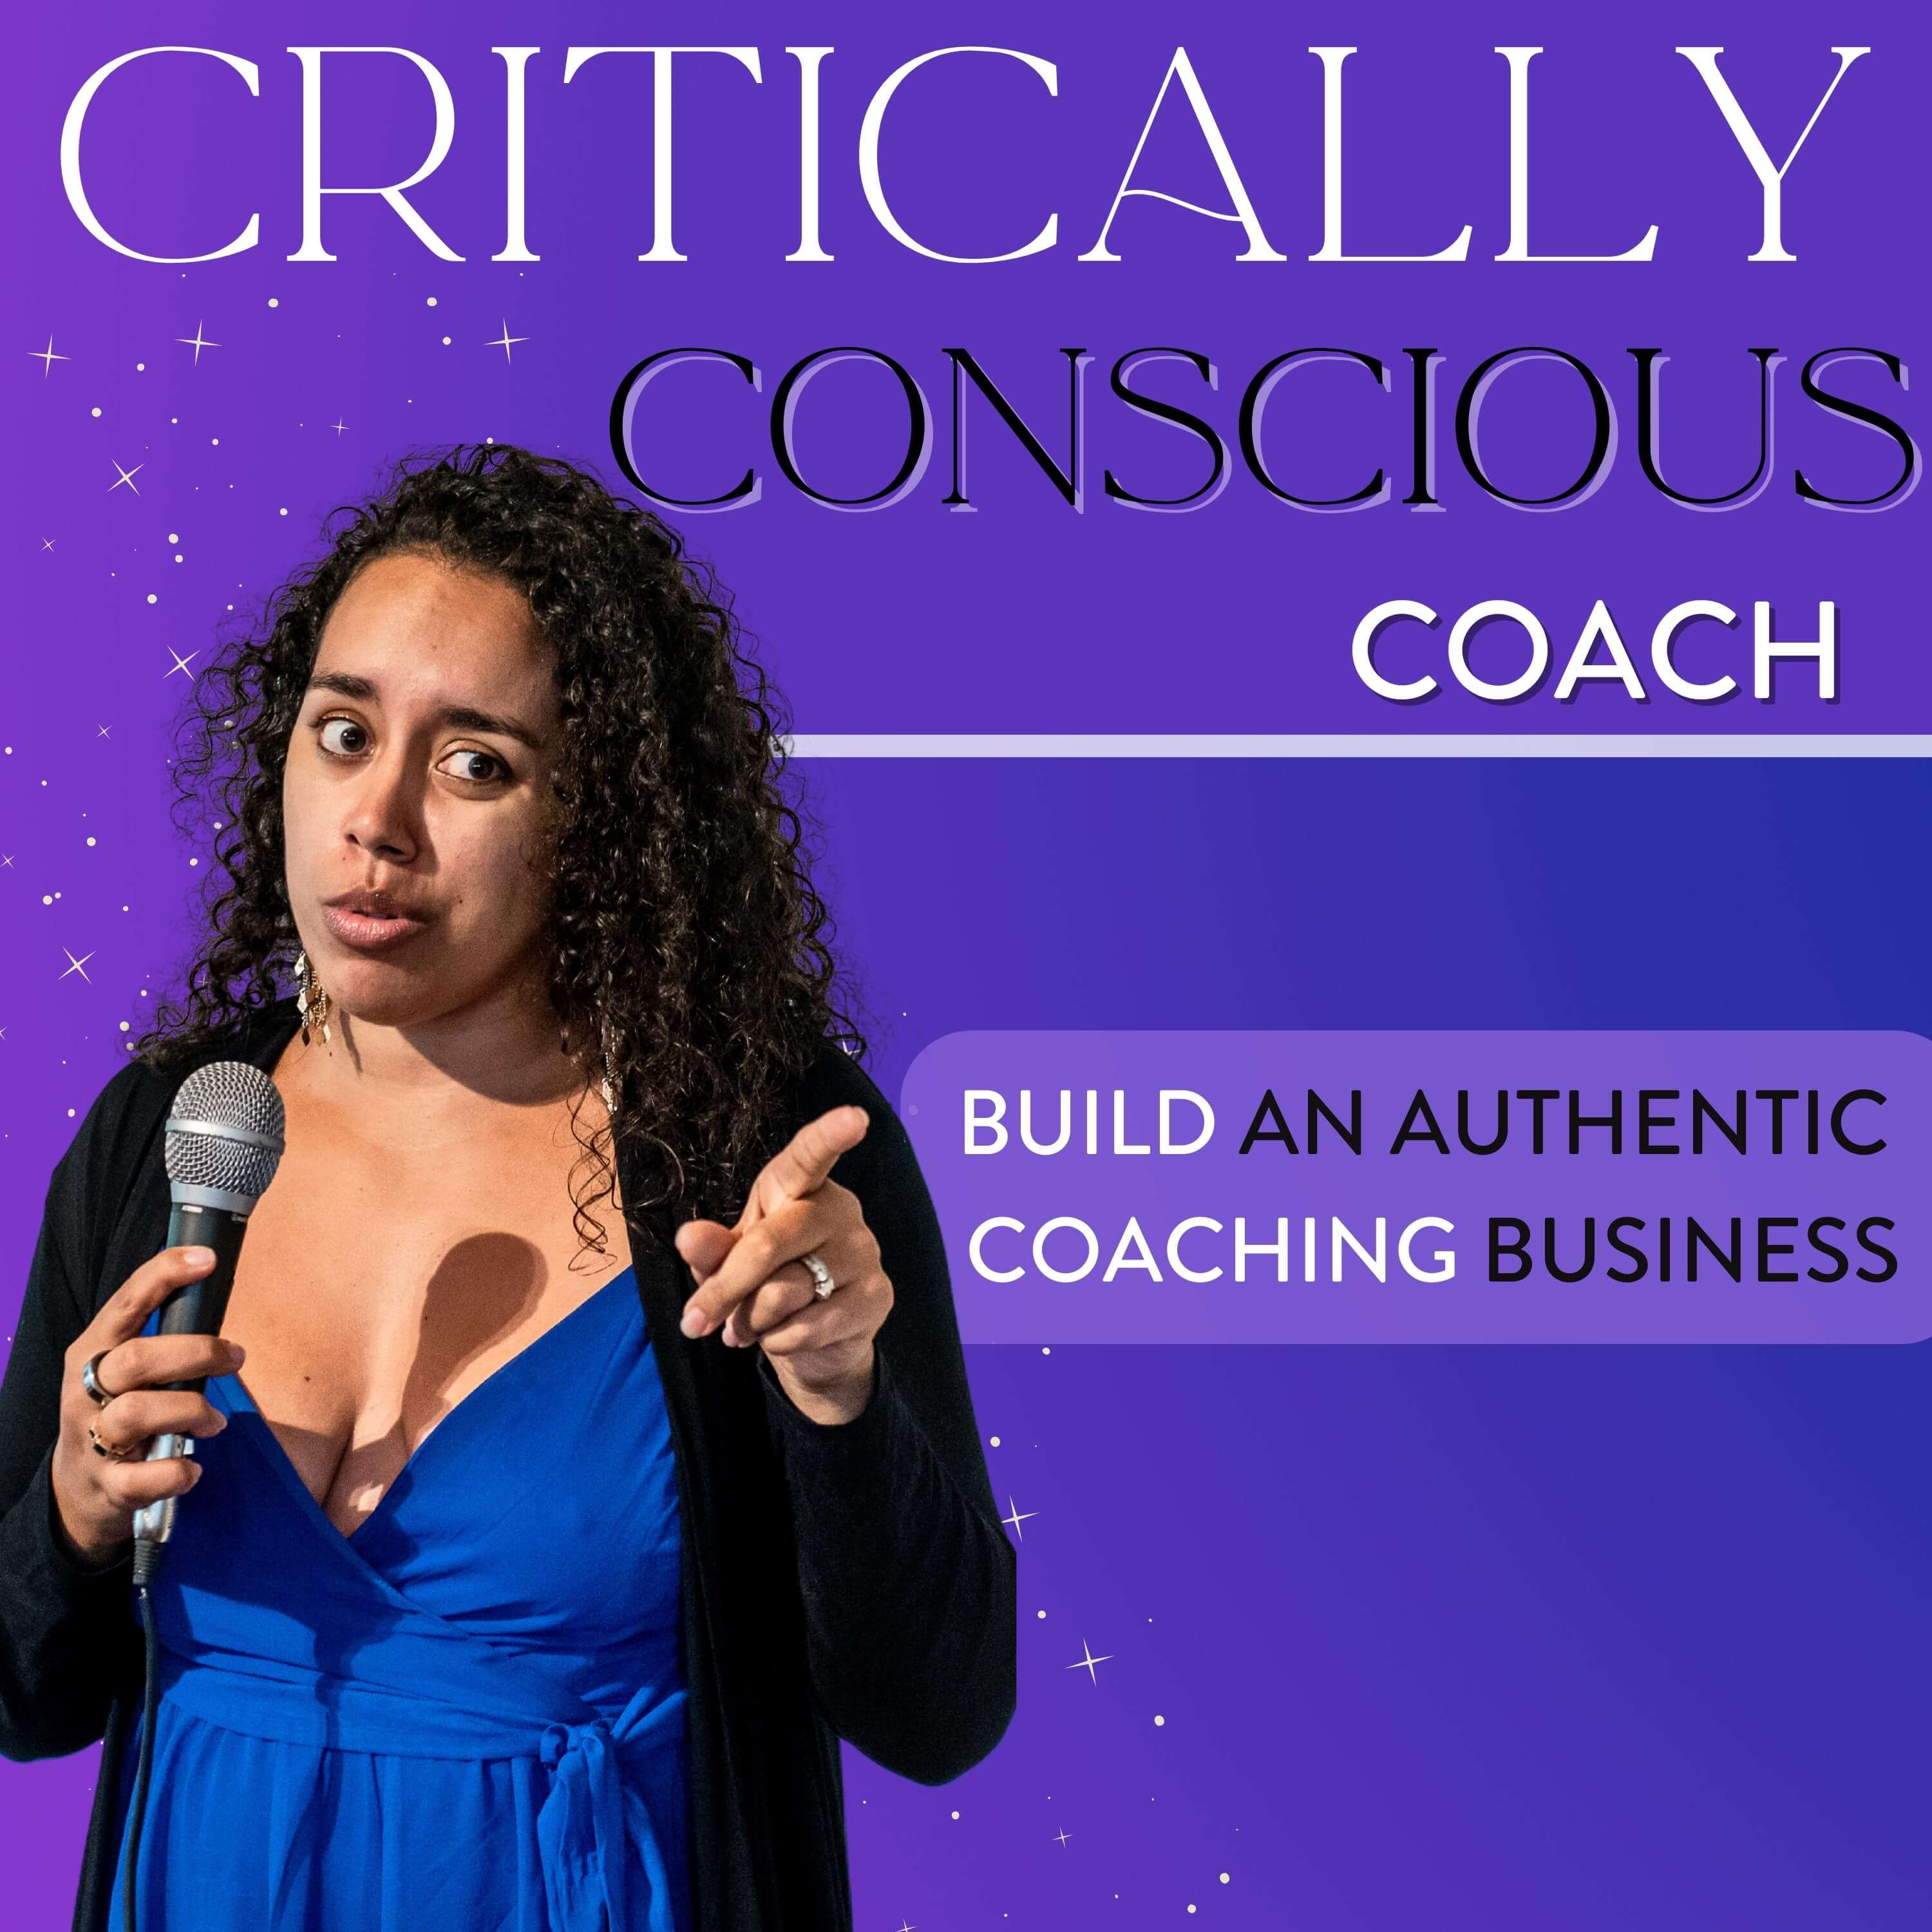 The Critically Conscious Coach